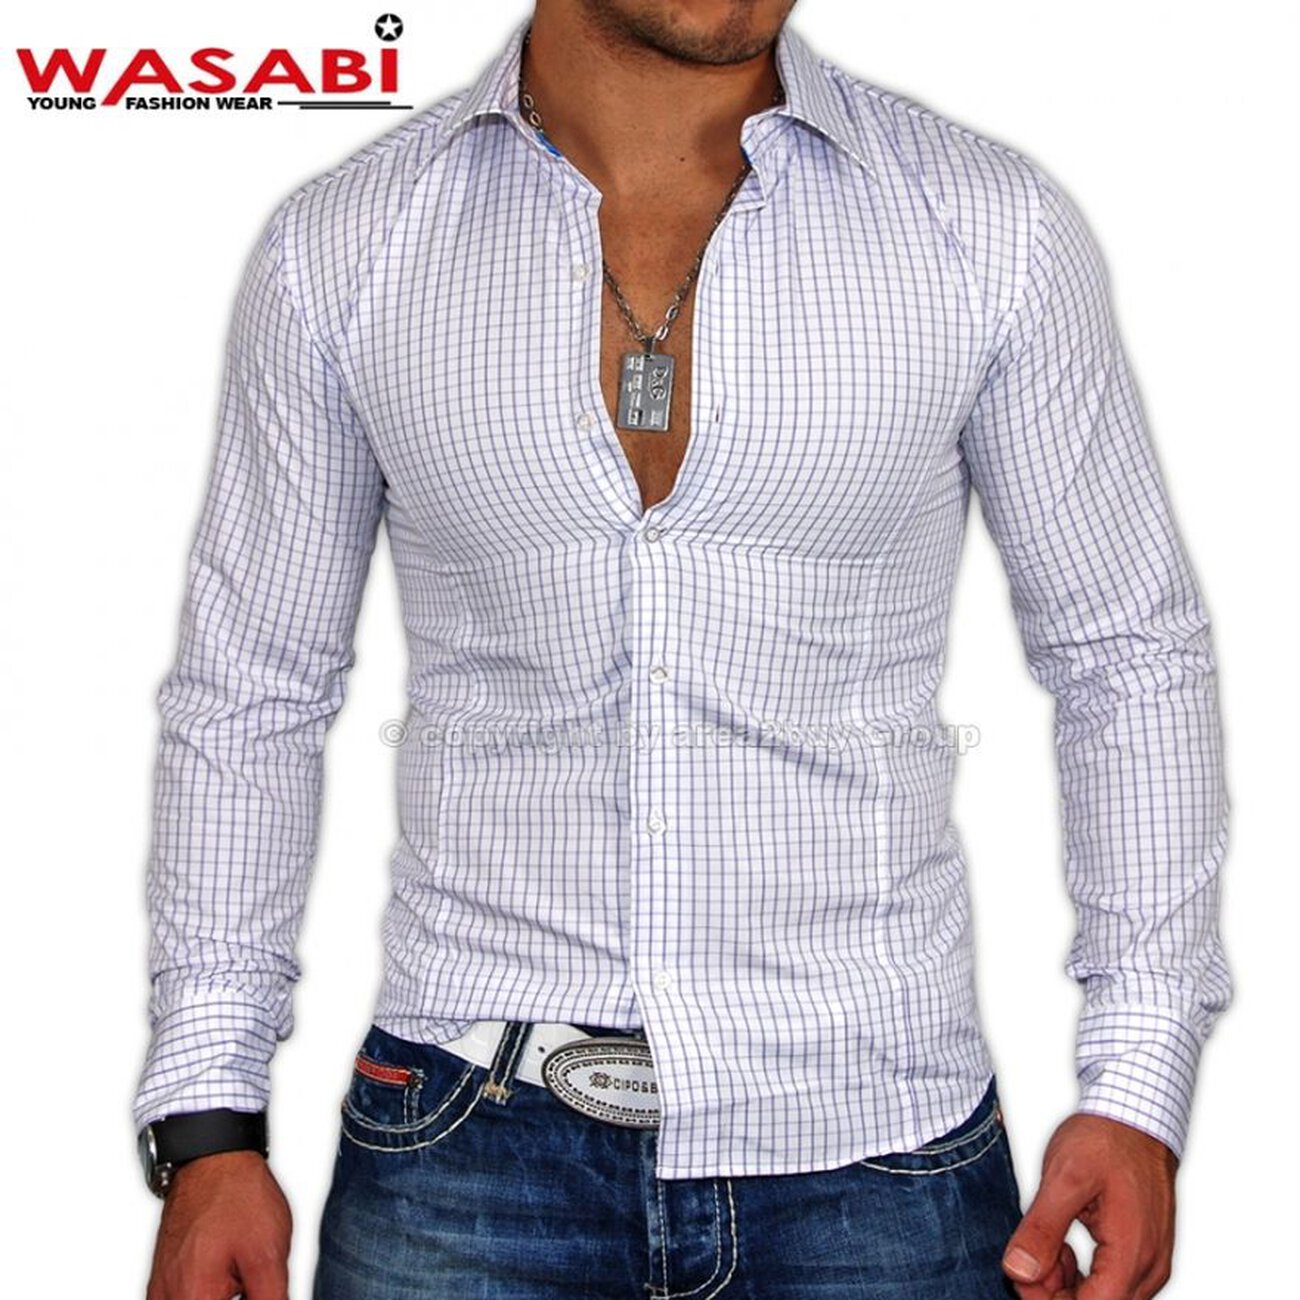 Herrenhemd Wasabi 2000 Lila | Hemden kaufen